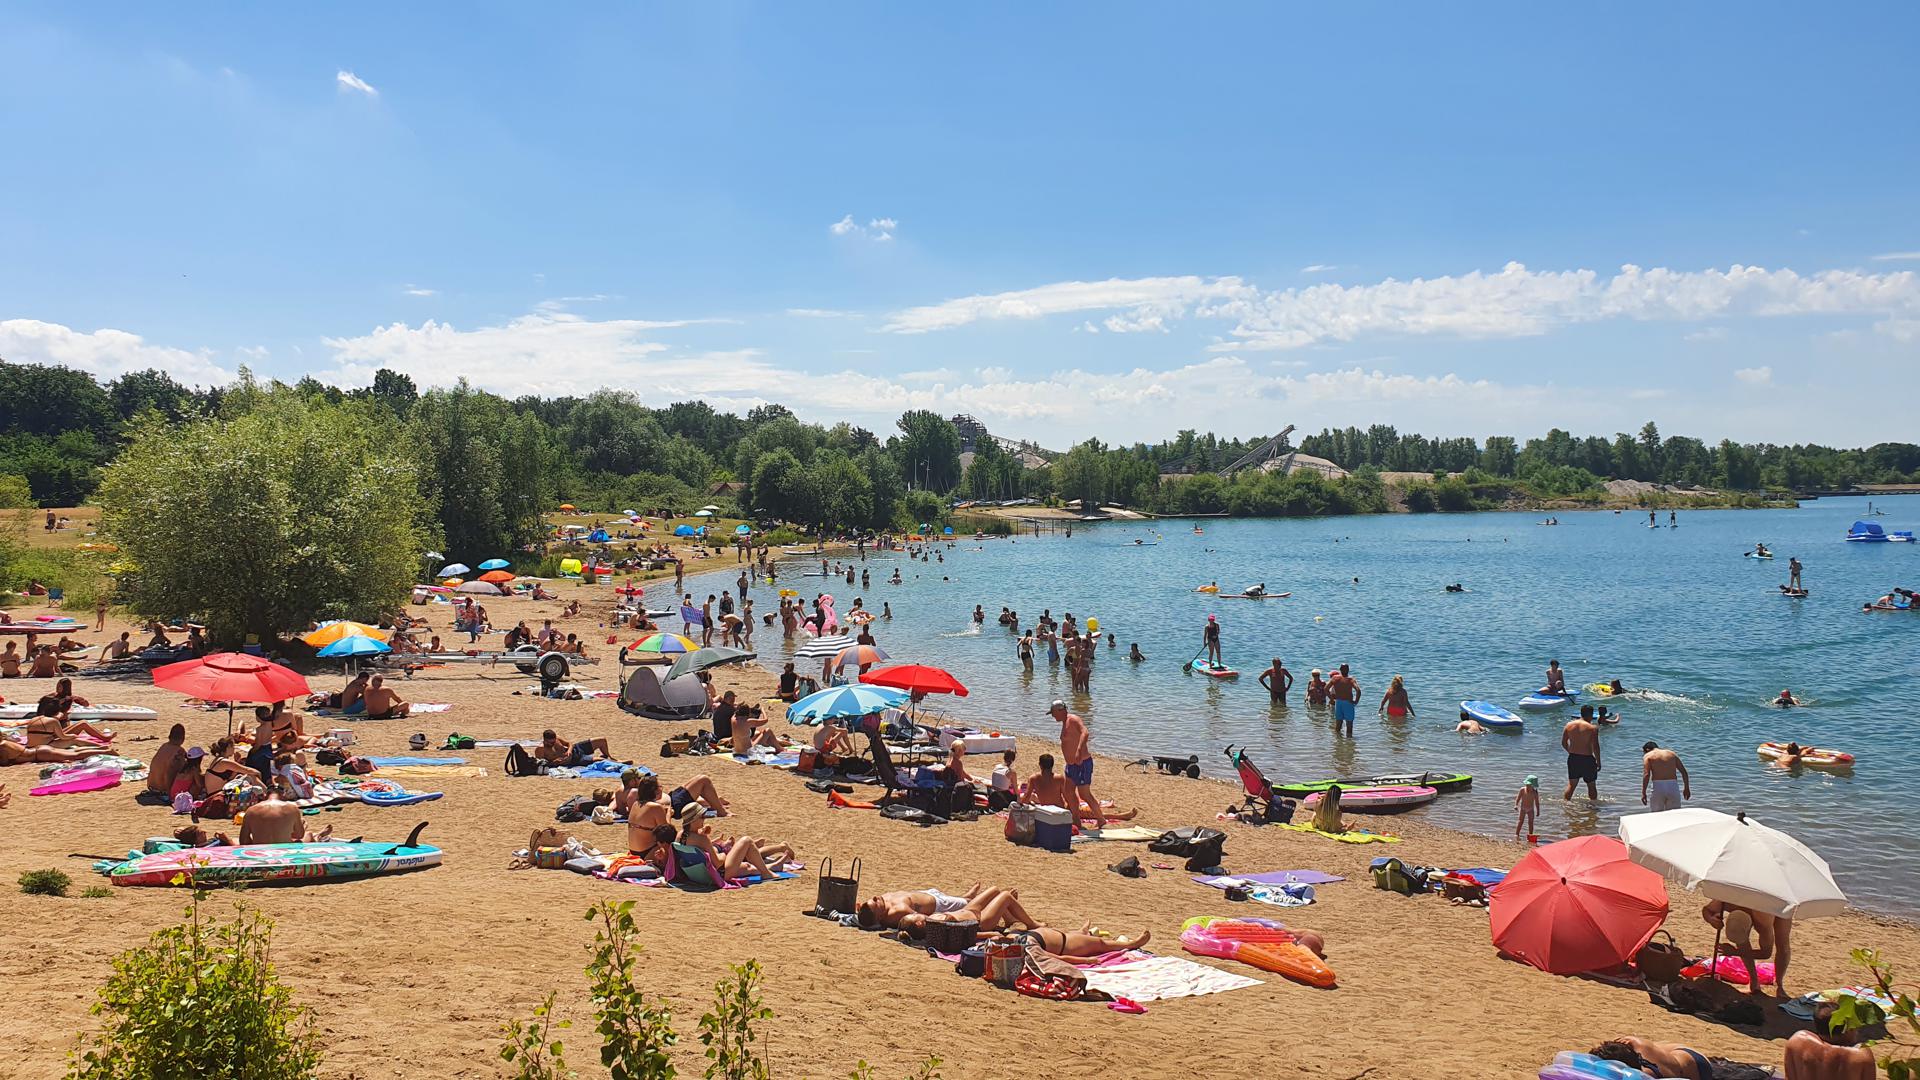 Badespaß für Groß und Klein: Das gute Wetter lockt am Wochenende zahlreiche Badegäste aus der ganzen Region an den Epplesee nach Rheinstetten.